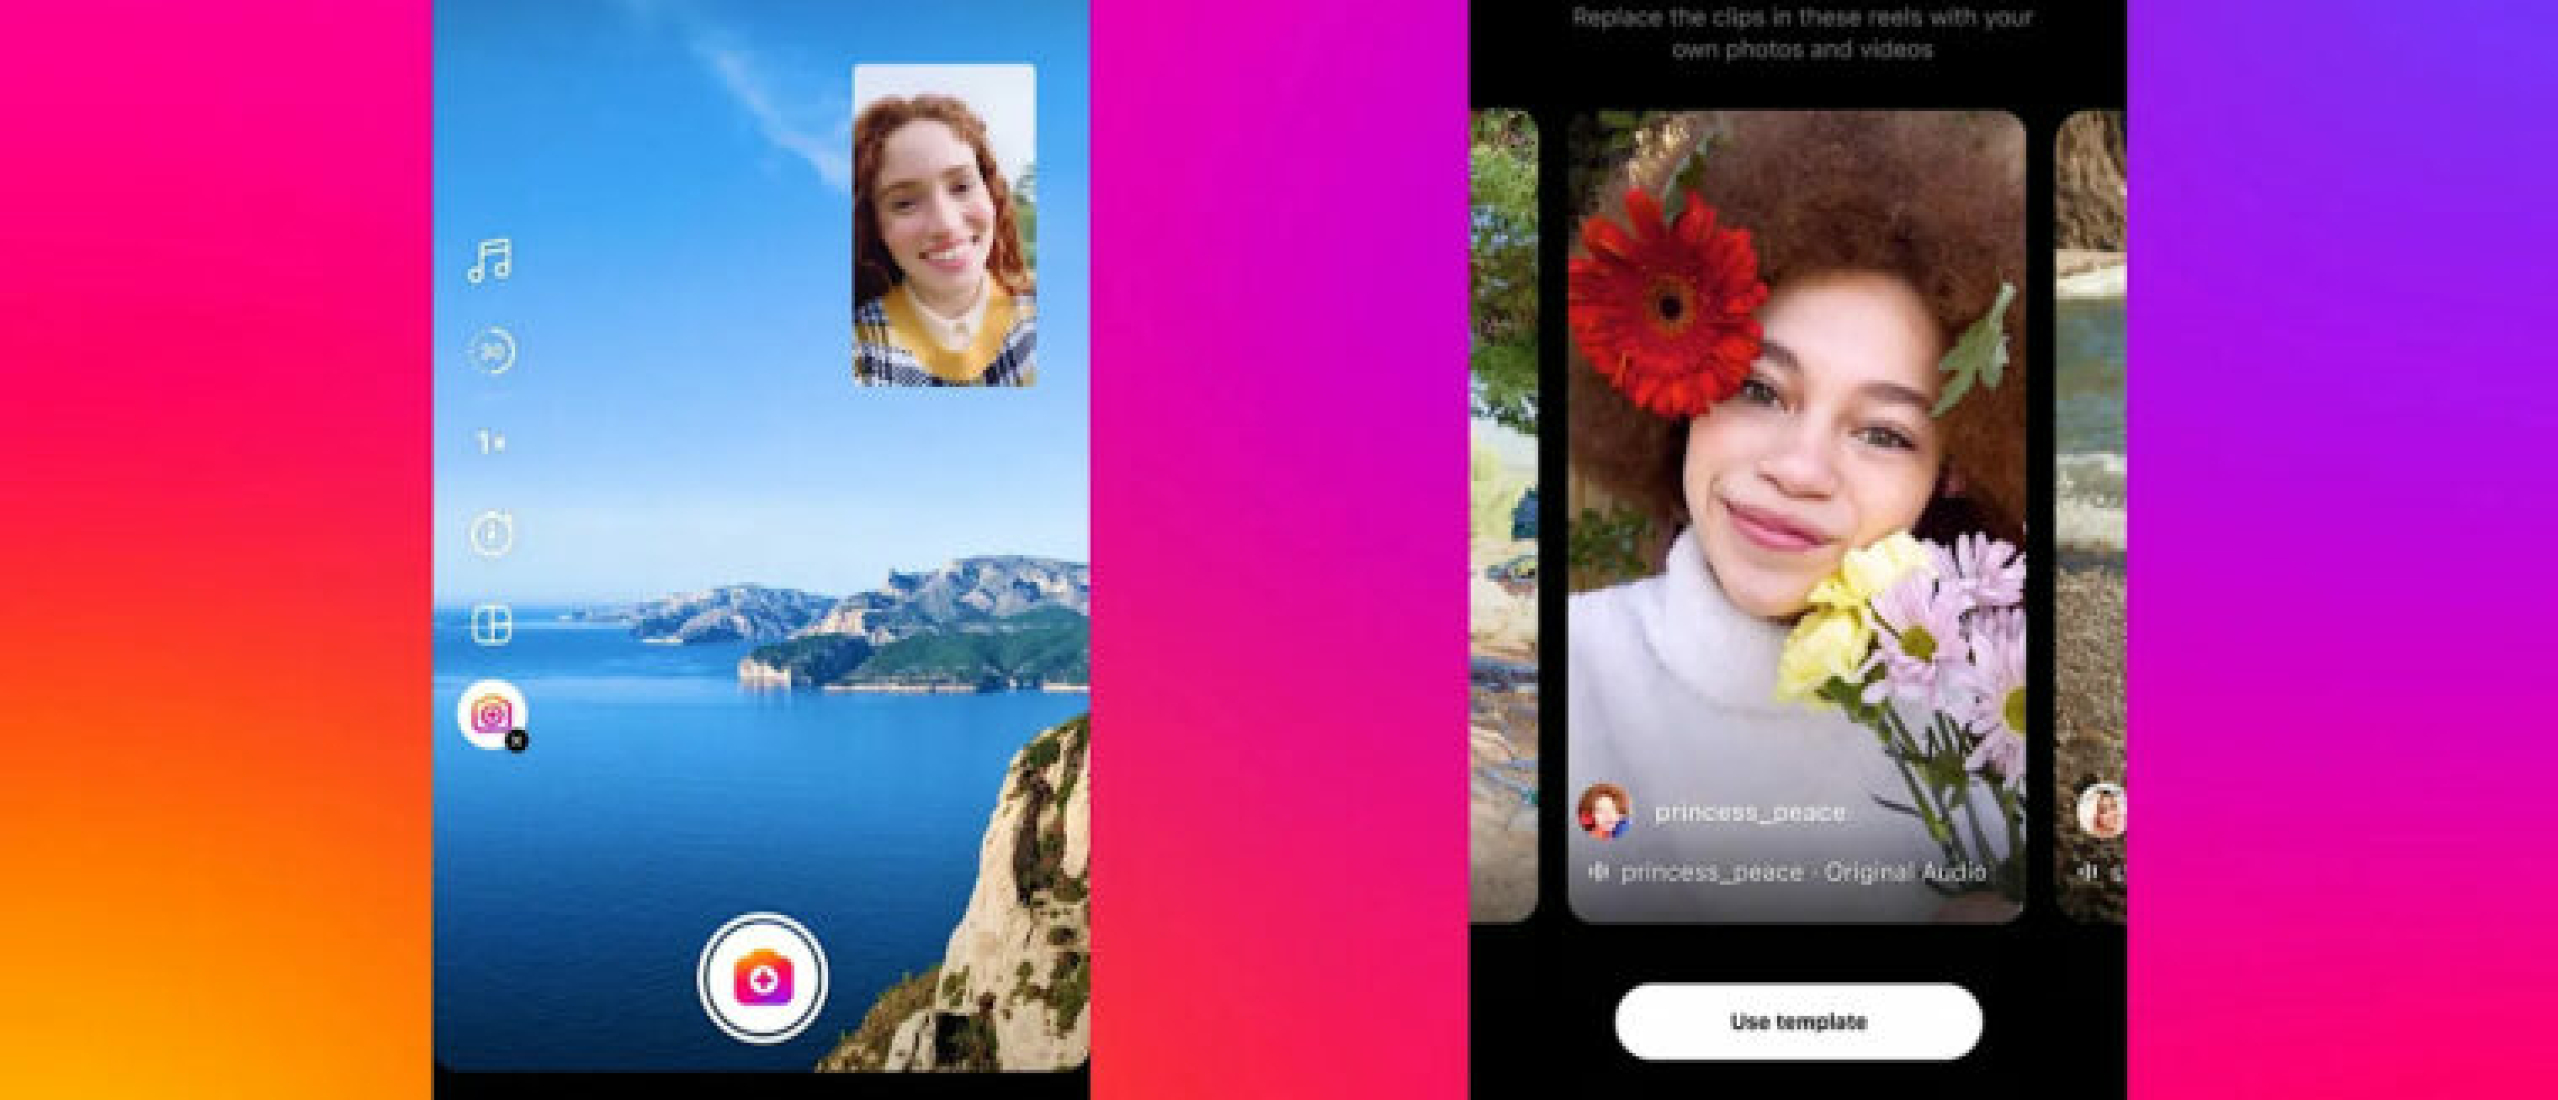 Instagram komt met nieuwe functies voor Reels, waaronder templates en boosts